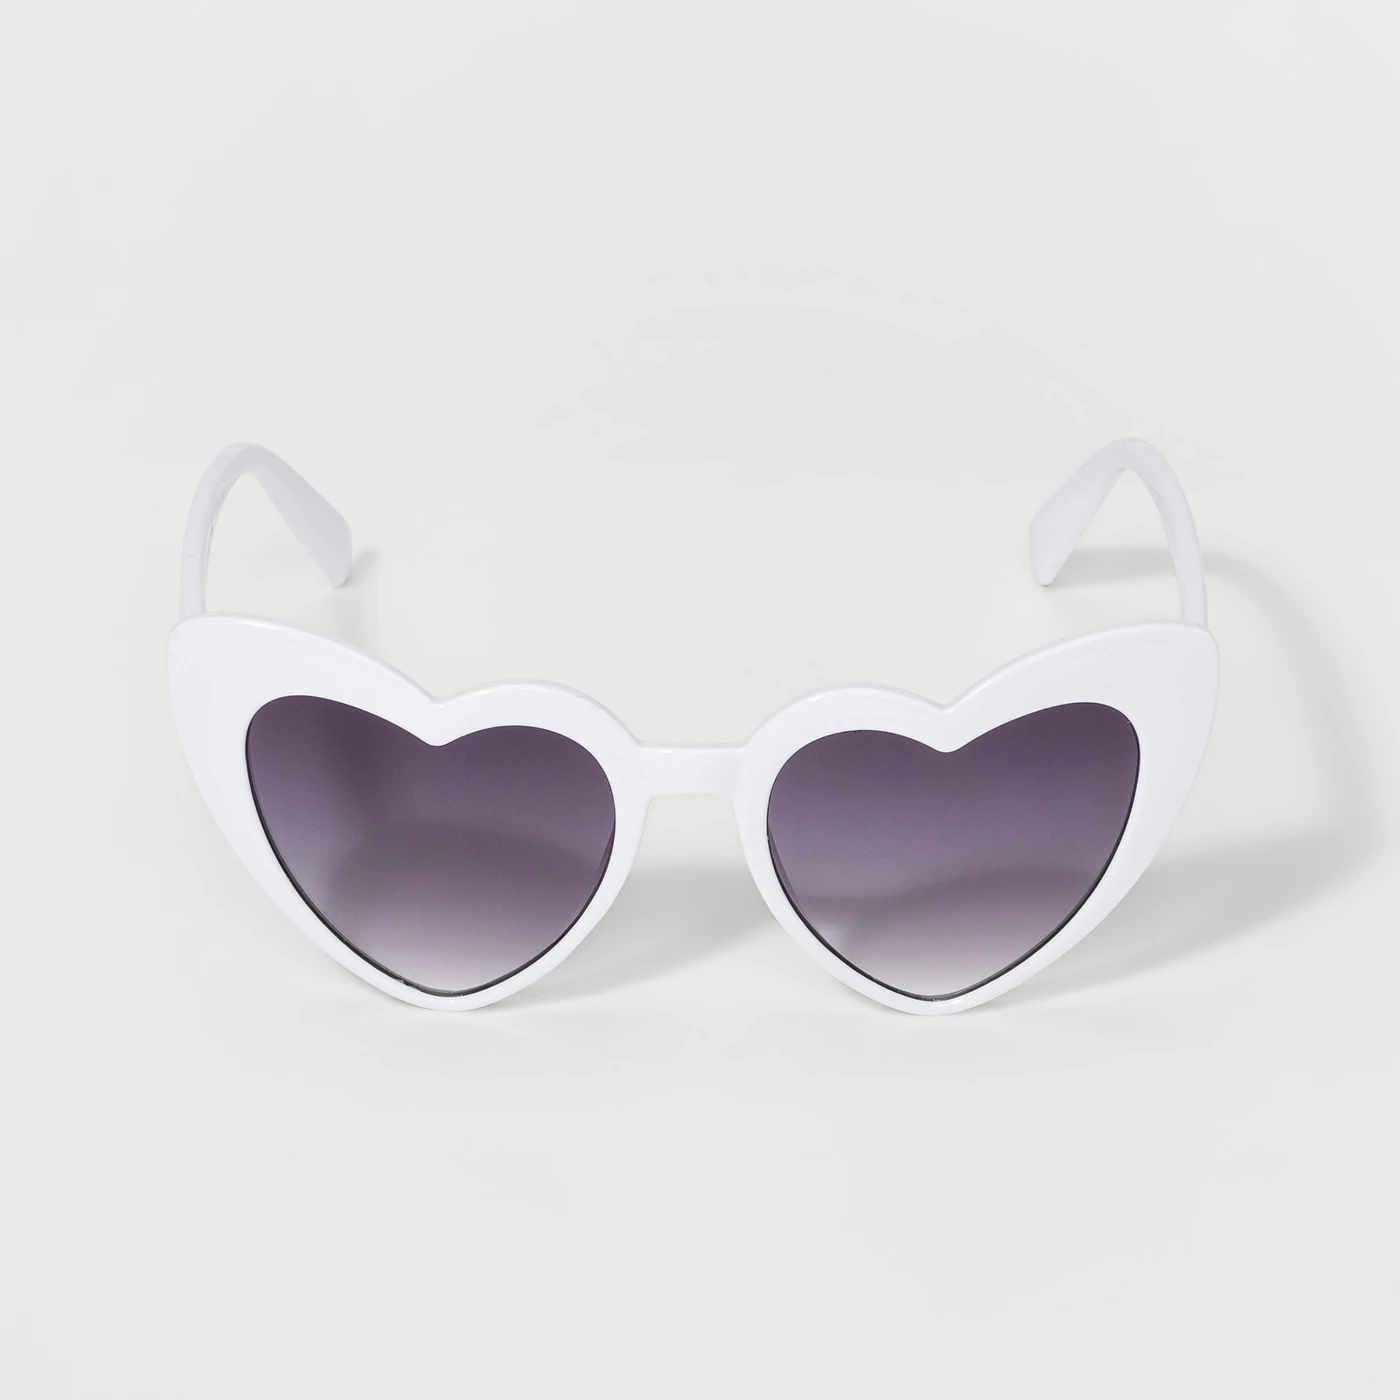 Girls' Heart Sunglasses - art classâ¢ White - image 1 of 1